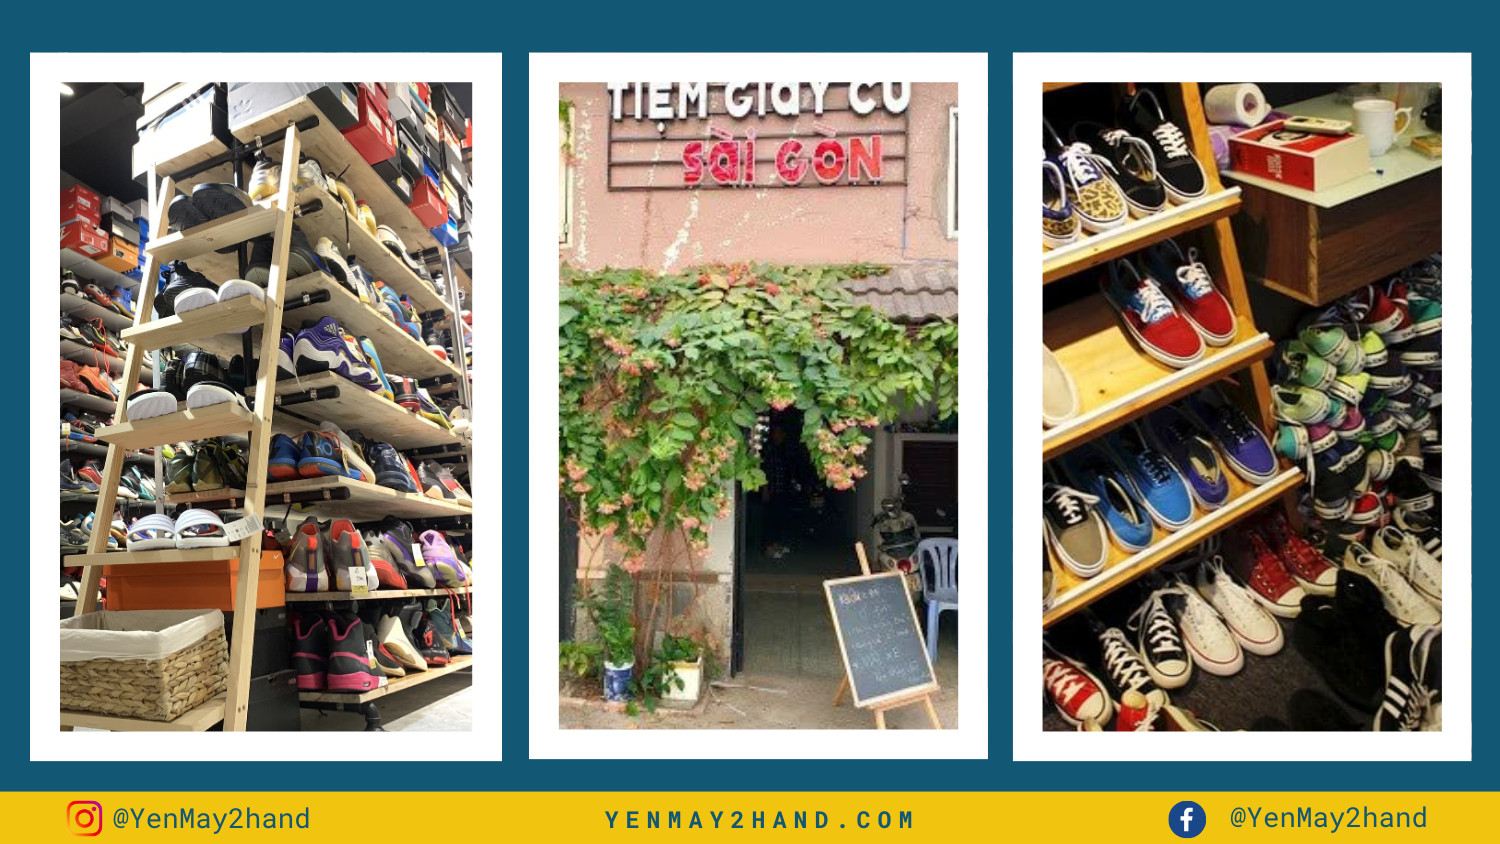 Giày và cửa hiệu tại Tiệm giày cũ Sài Gòn